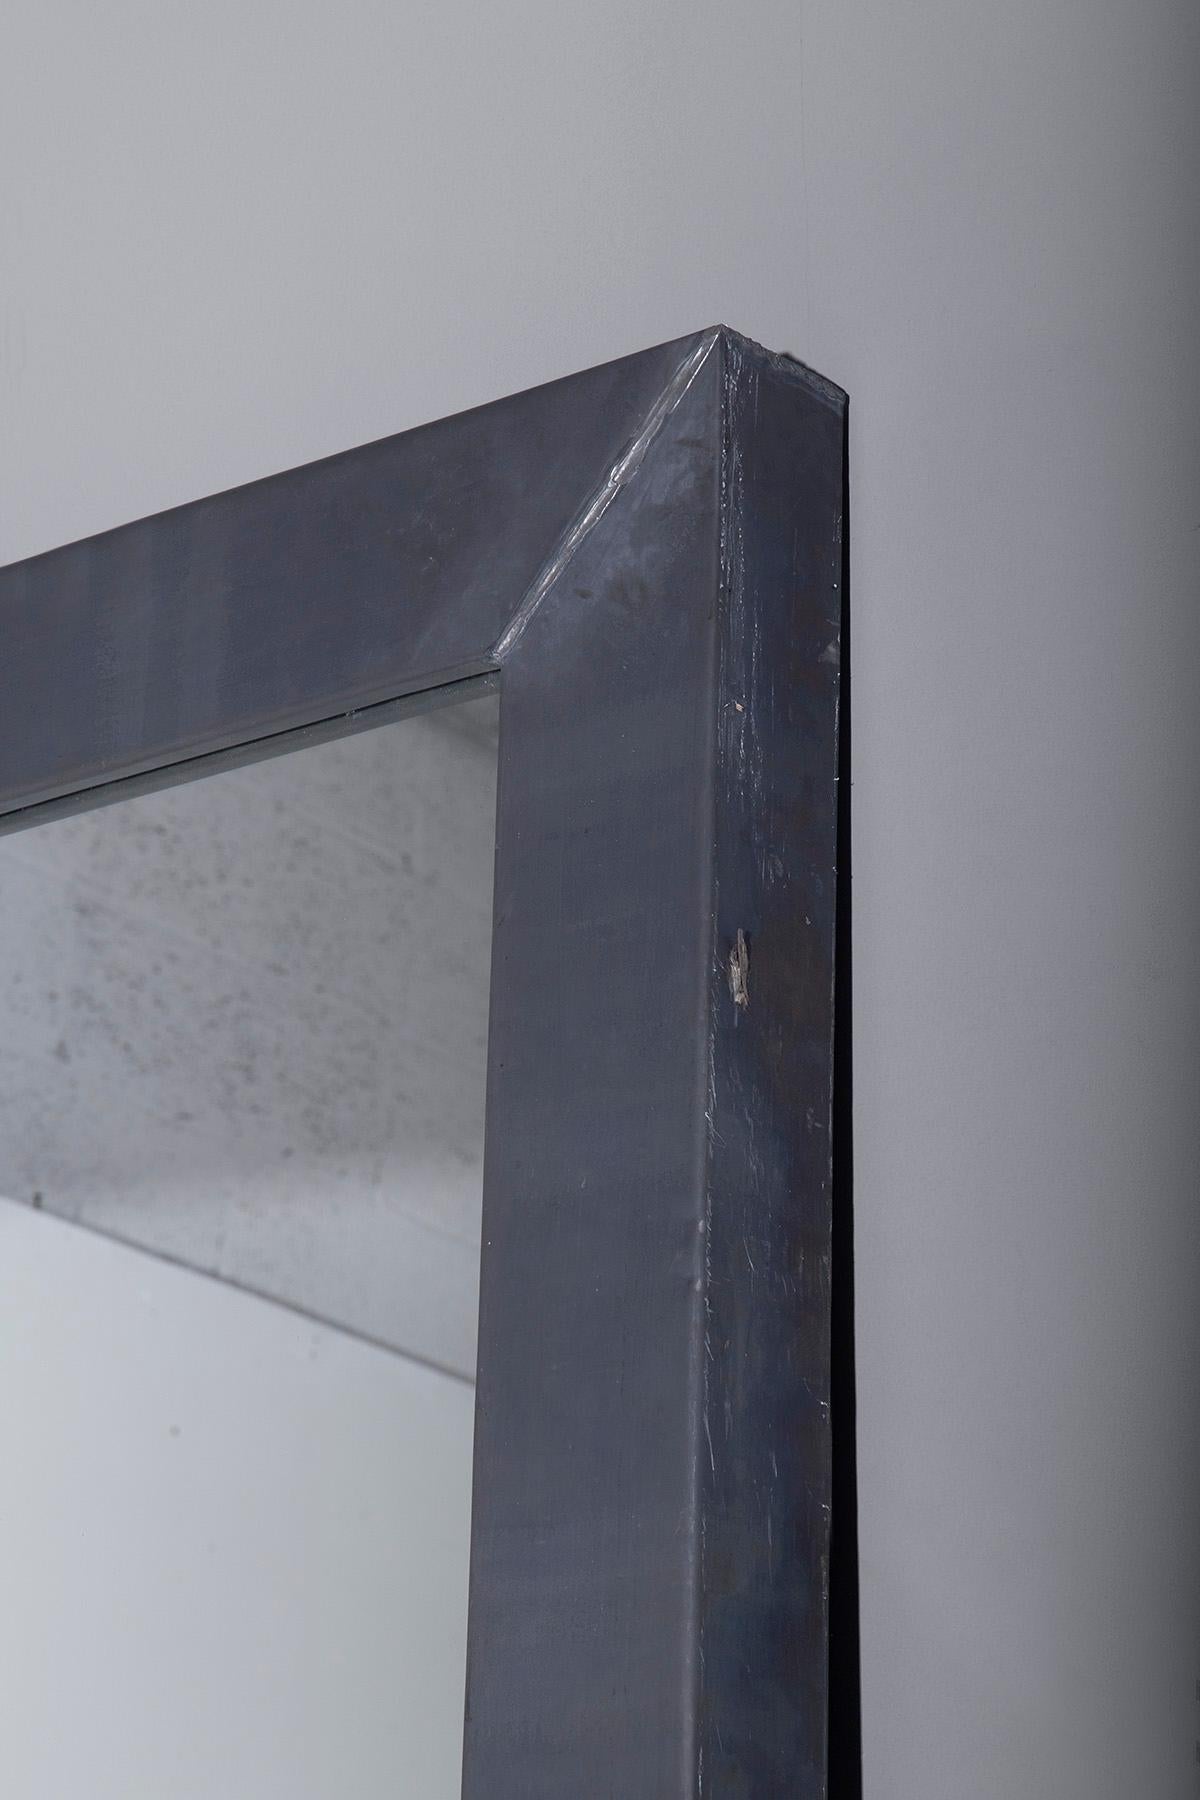 Dieser imposante Spiegel von Boffi ist ein Beispiel für modernes italienisches Design, das den innovativen Geist der 2010er Jahre widerspiegelt. Dieser rechteckige Spiegel aus dickem, bewusst minimalistisch gehaltenem Stahl ist ein Beweis für die